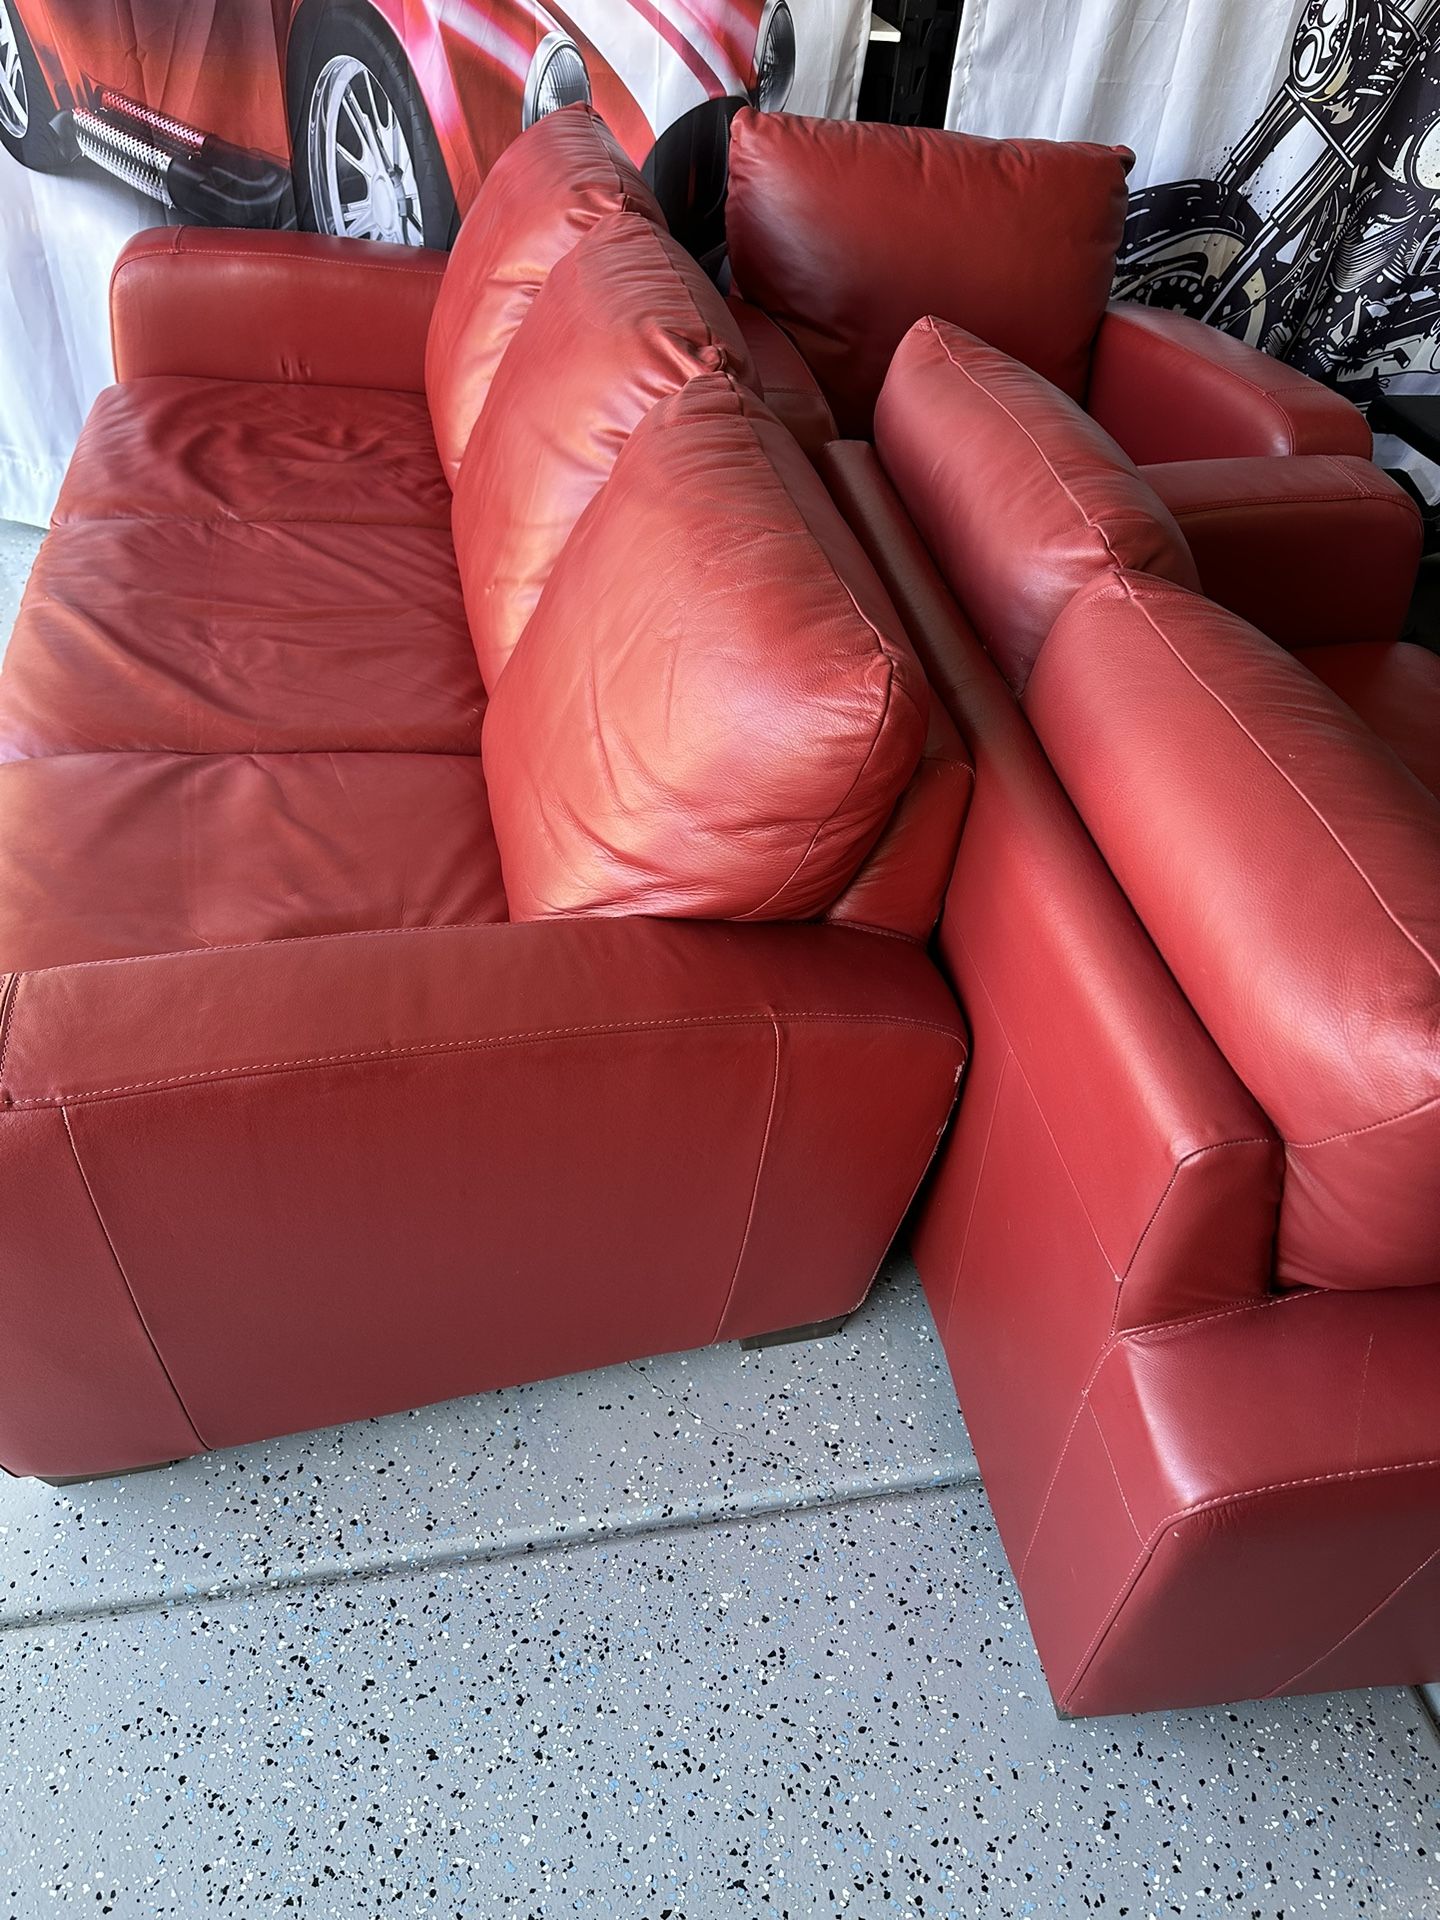 Natuzzi Red Italian Leather Sofa Set